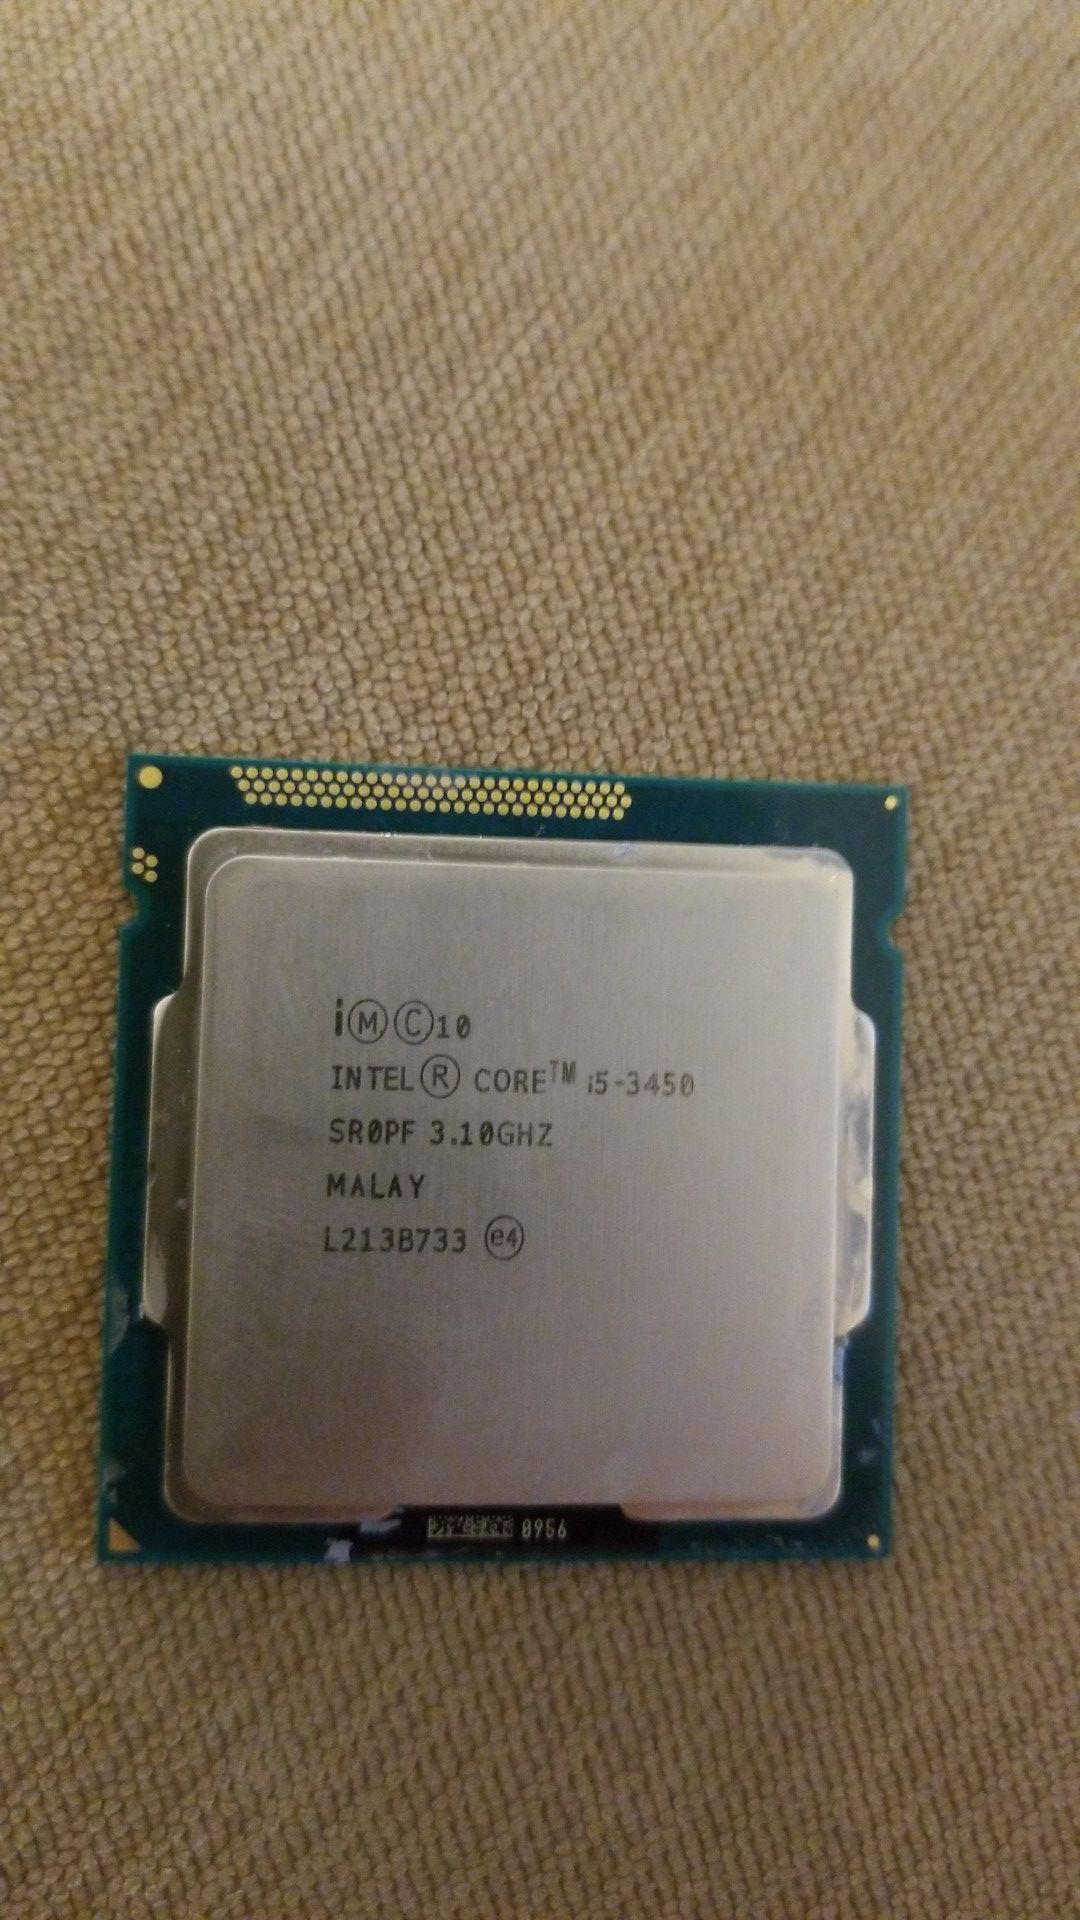 Intel Core i5 3450 cpu